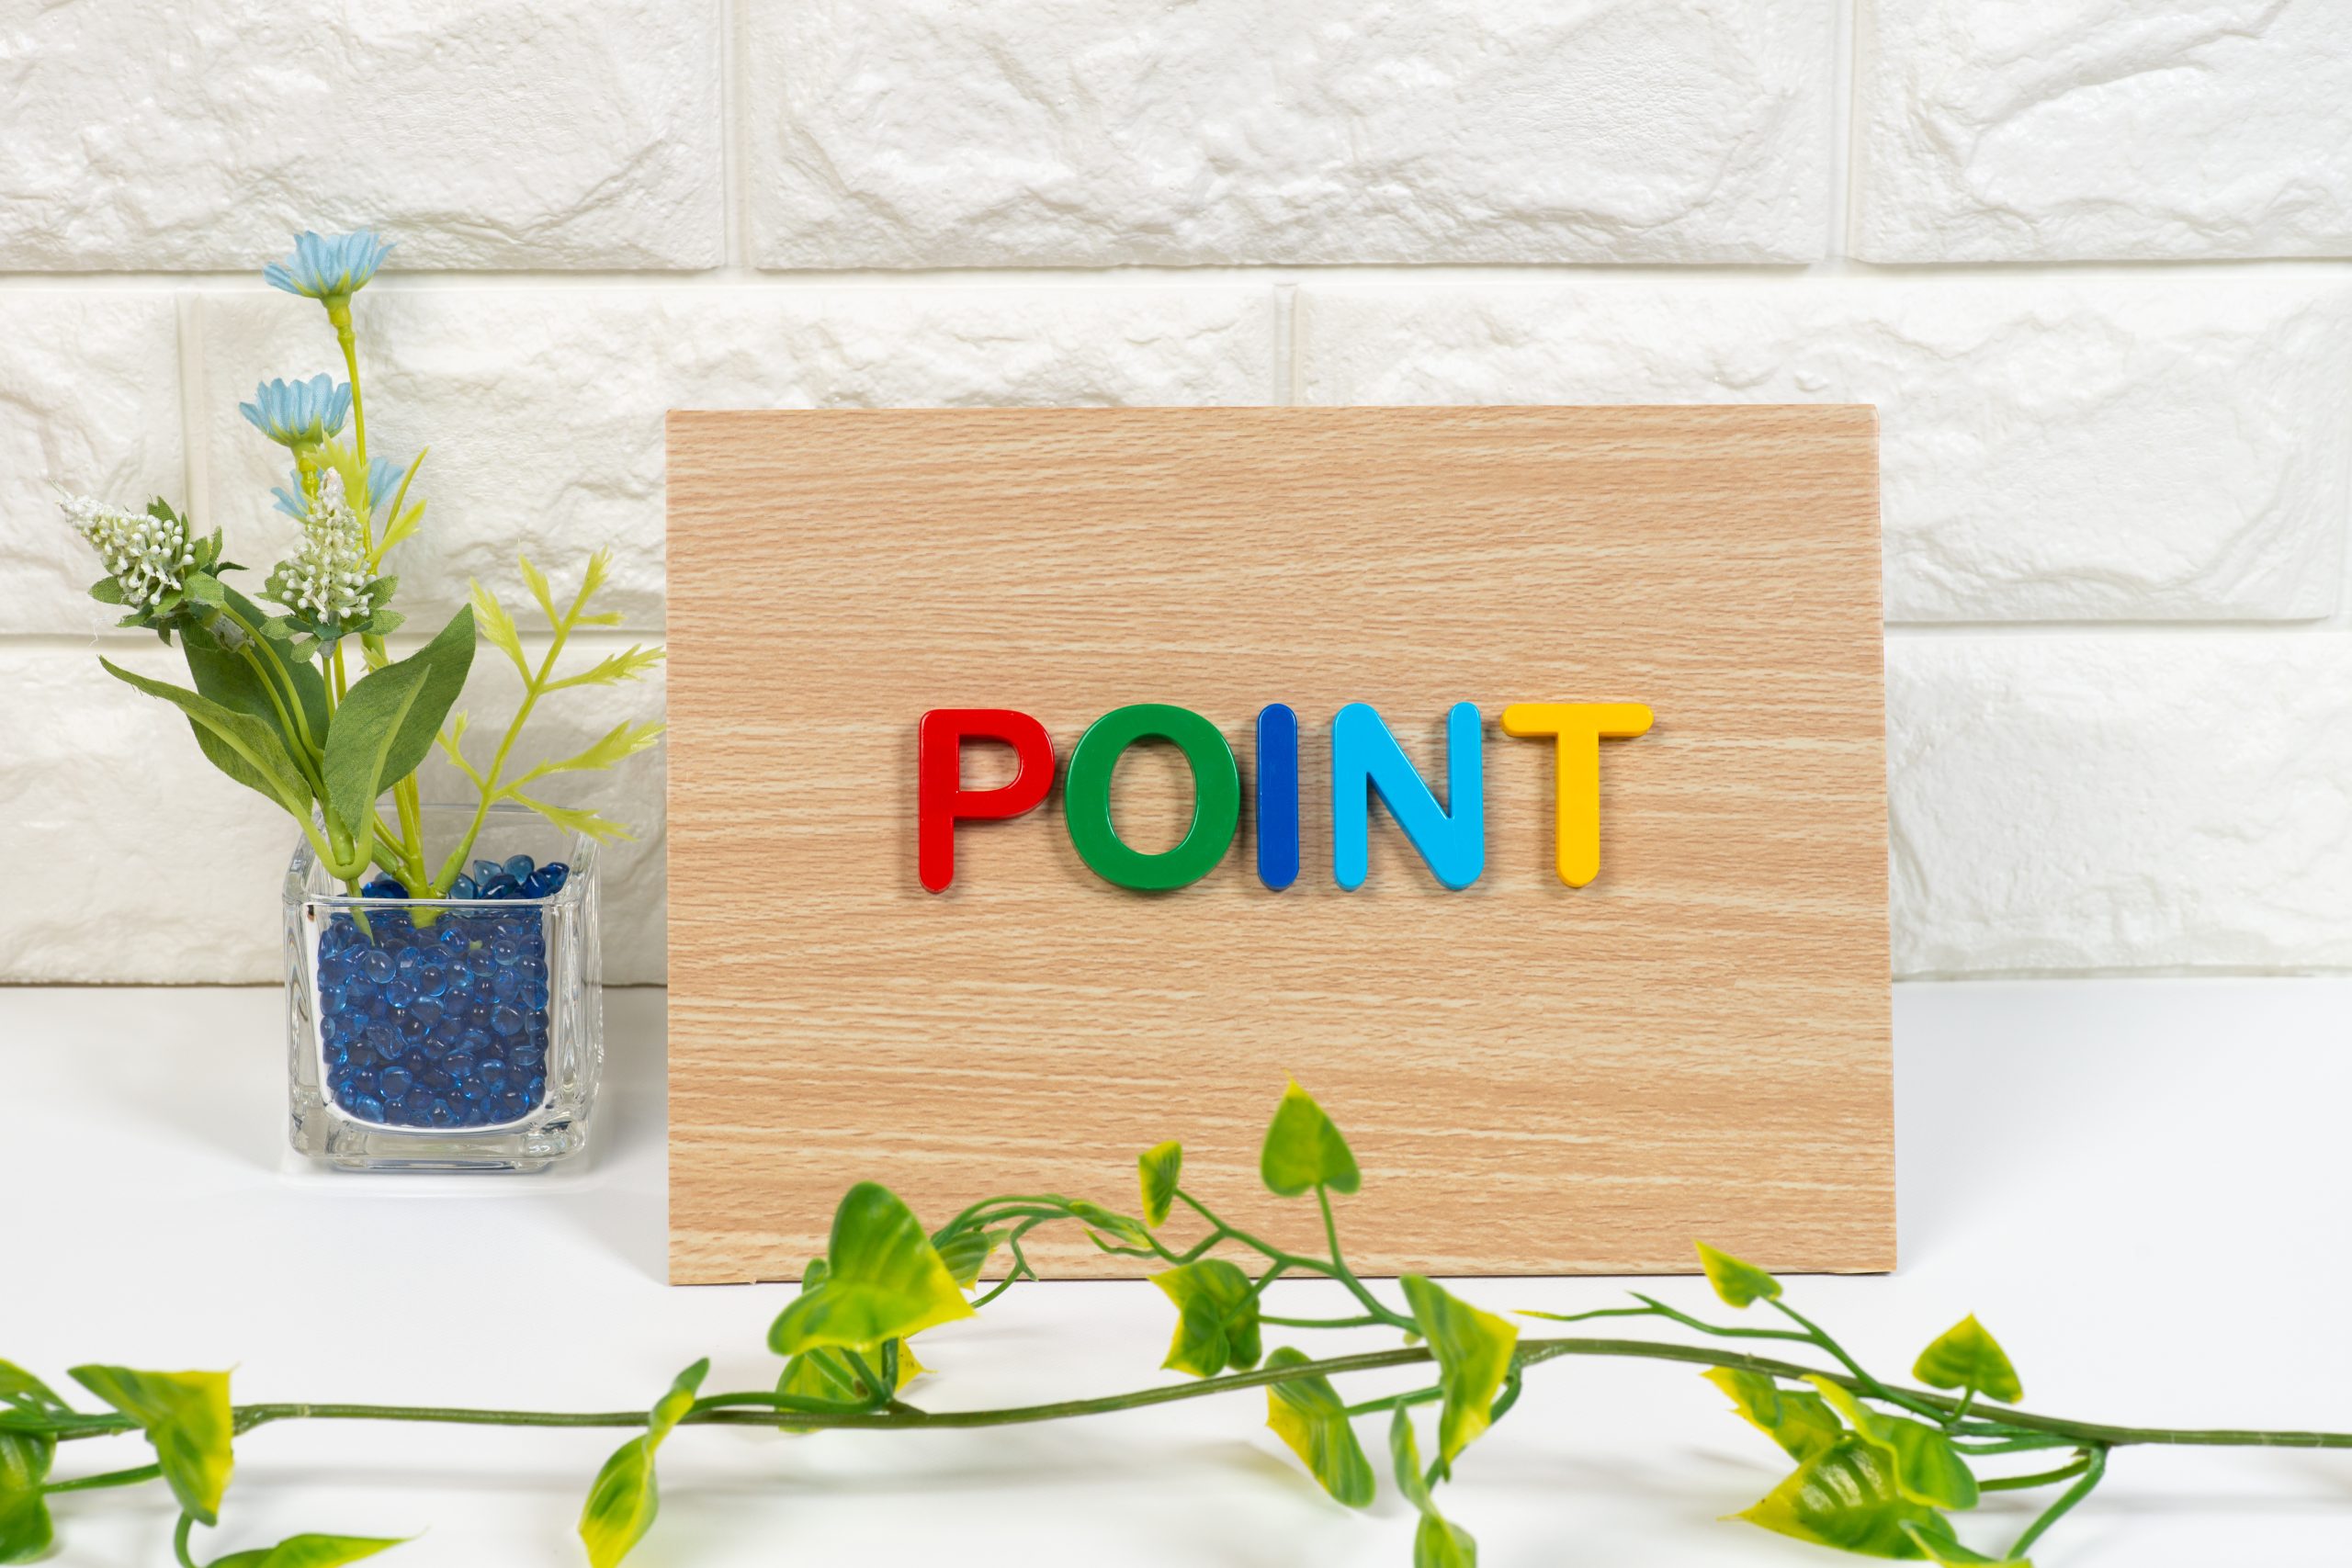 カラフルな色でPOINTと書かれた板と植物の写真